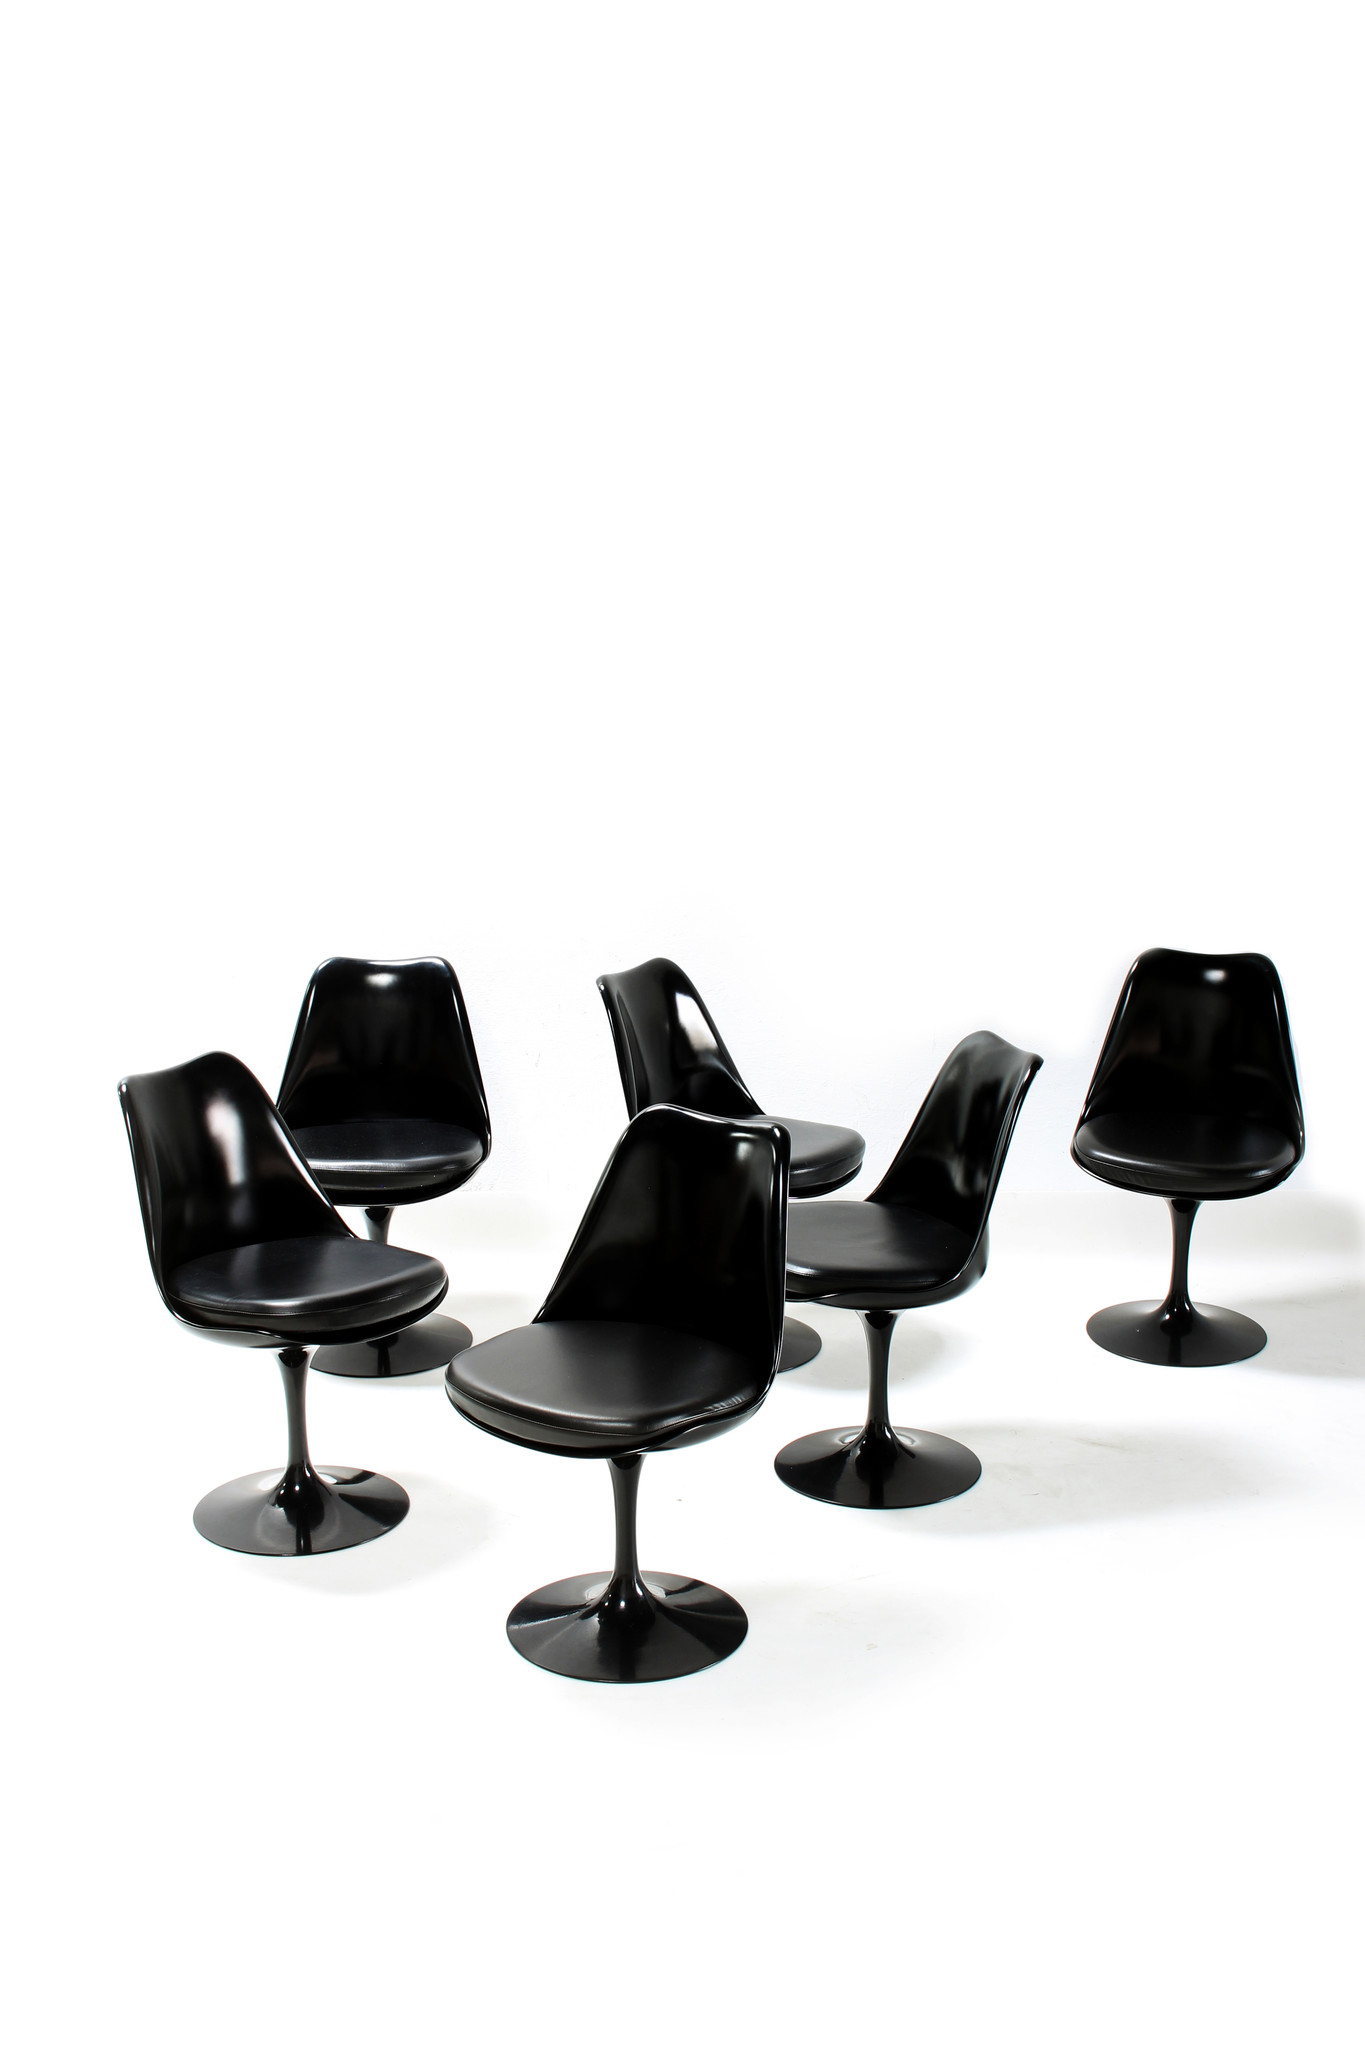 Eero Saarinen Knoll ovalen tafel met bijhorende tulip stoelen.